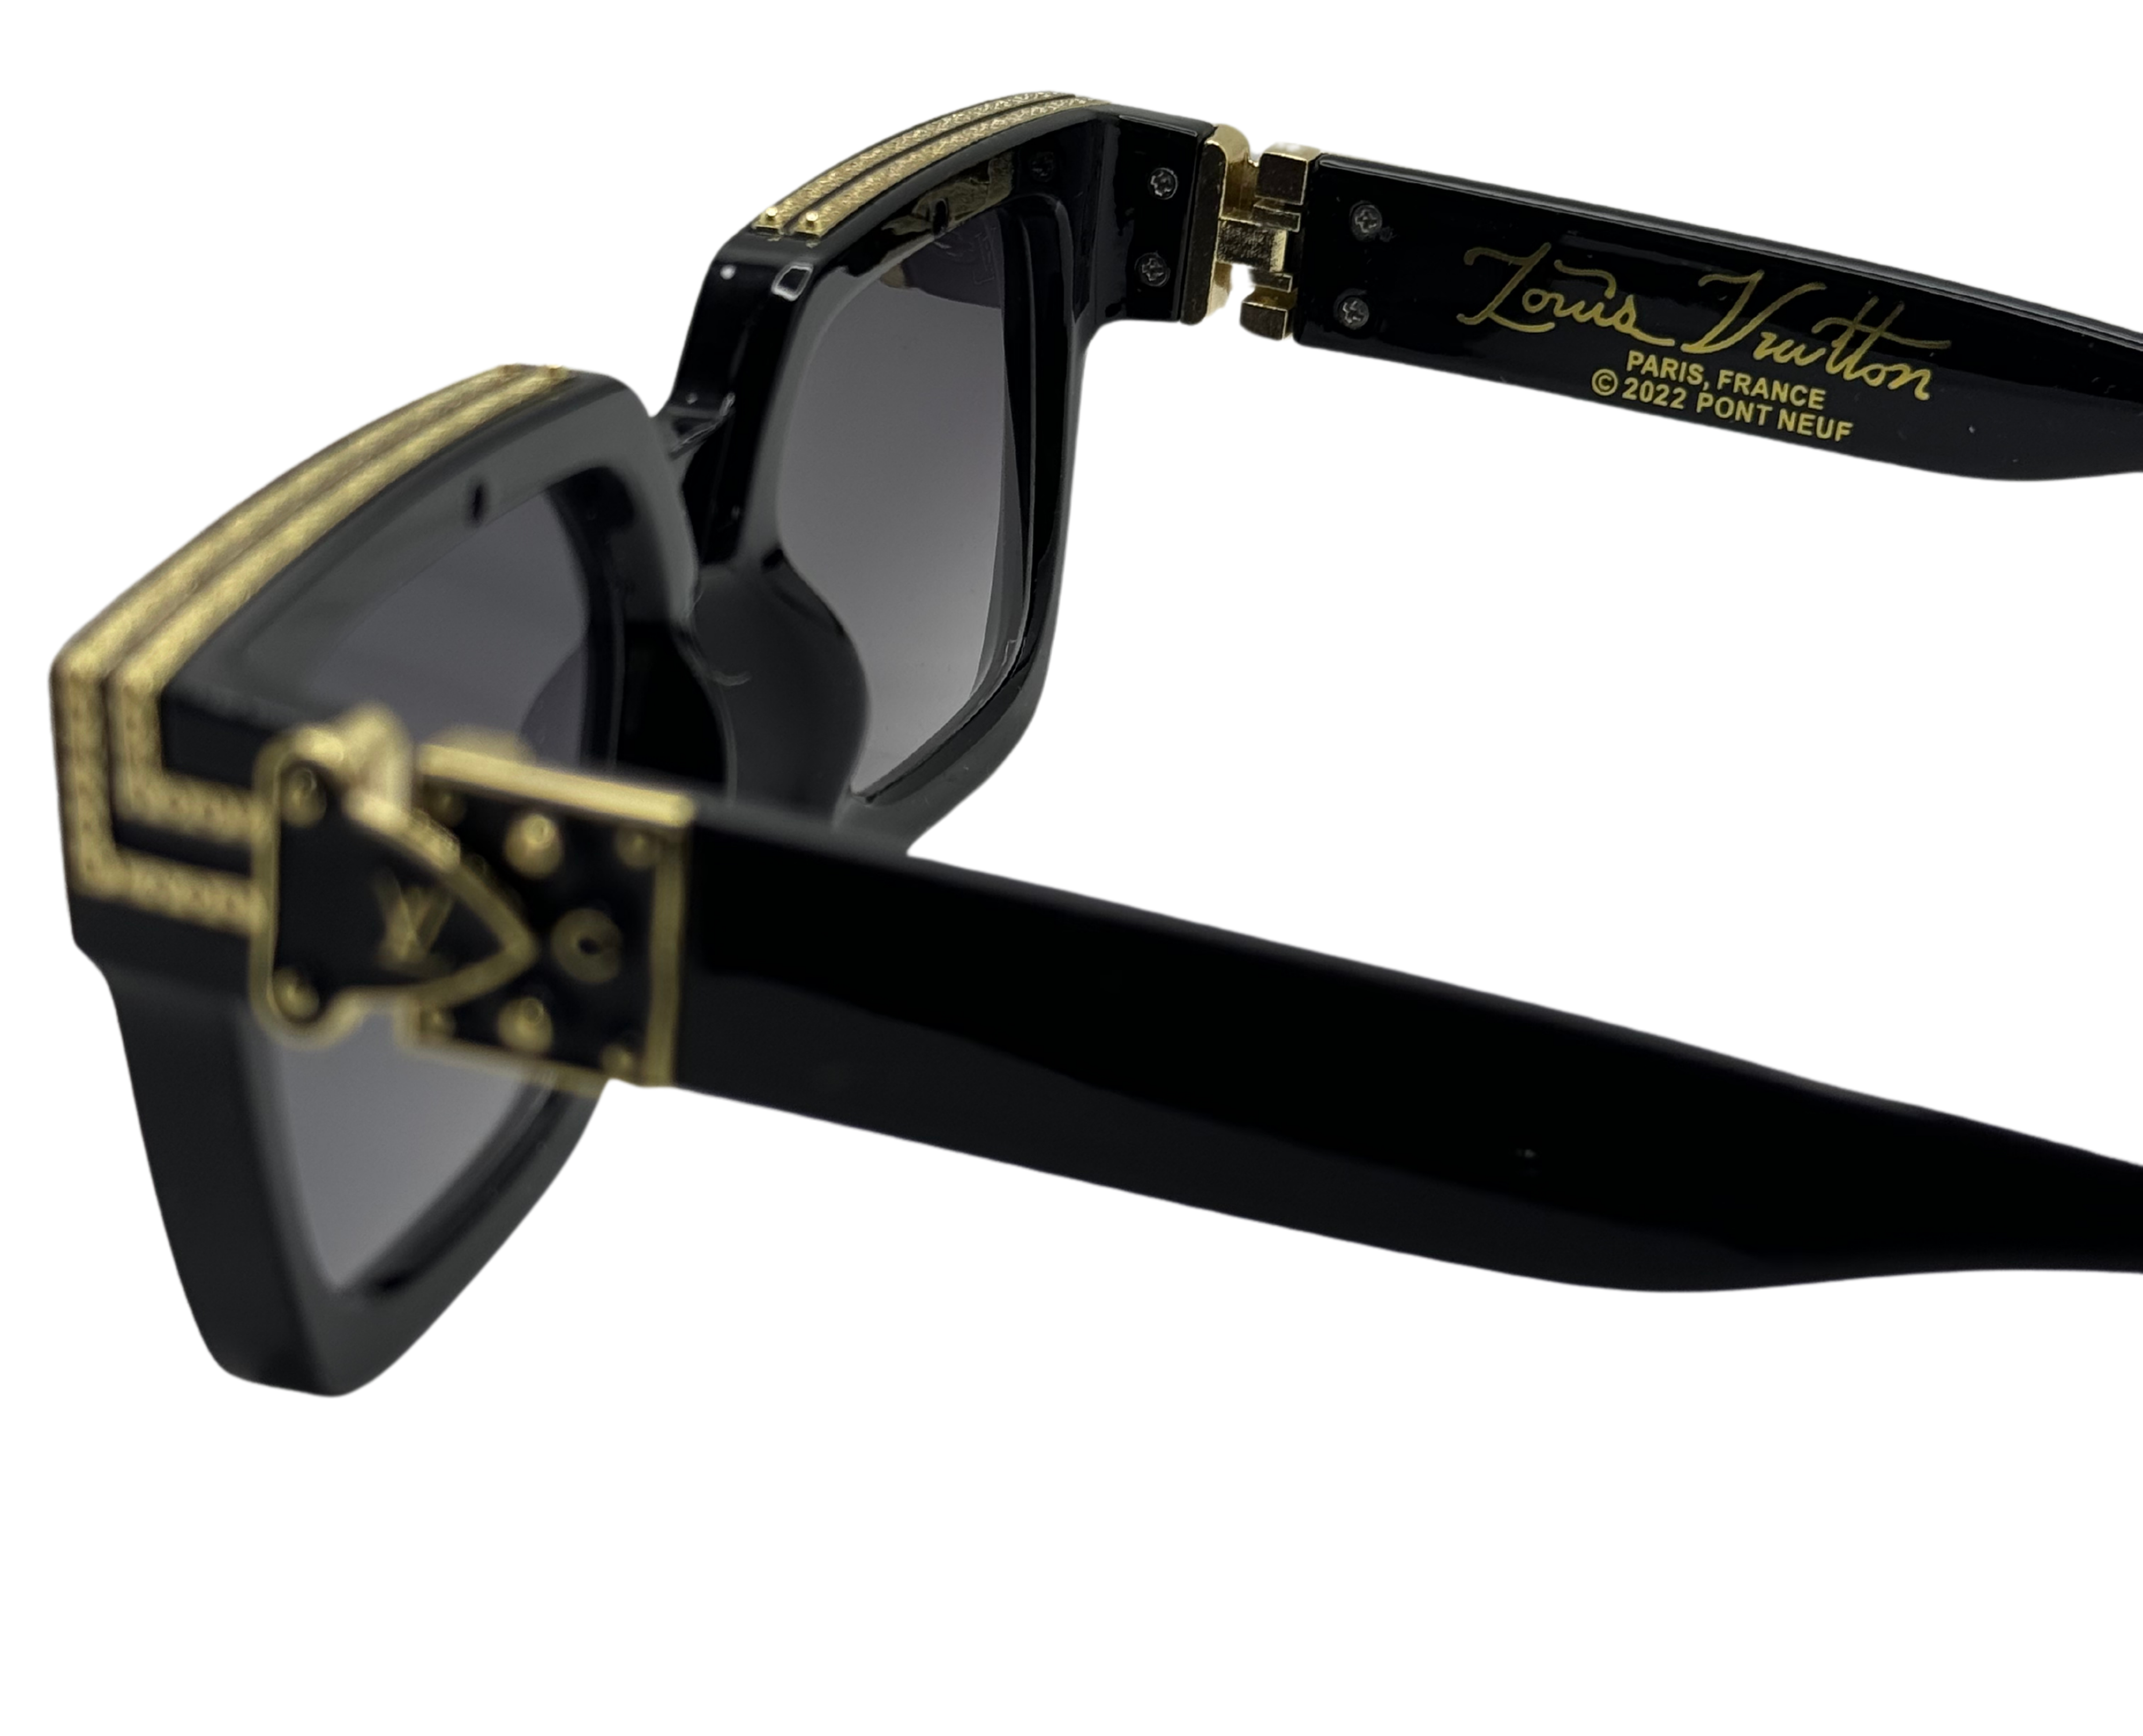 NS Luxury - Millionaire - Black - Sunglasses